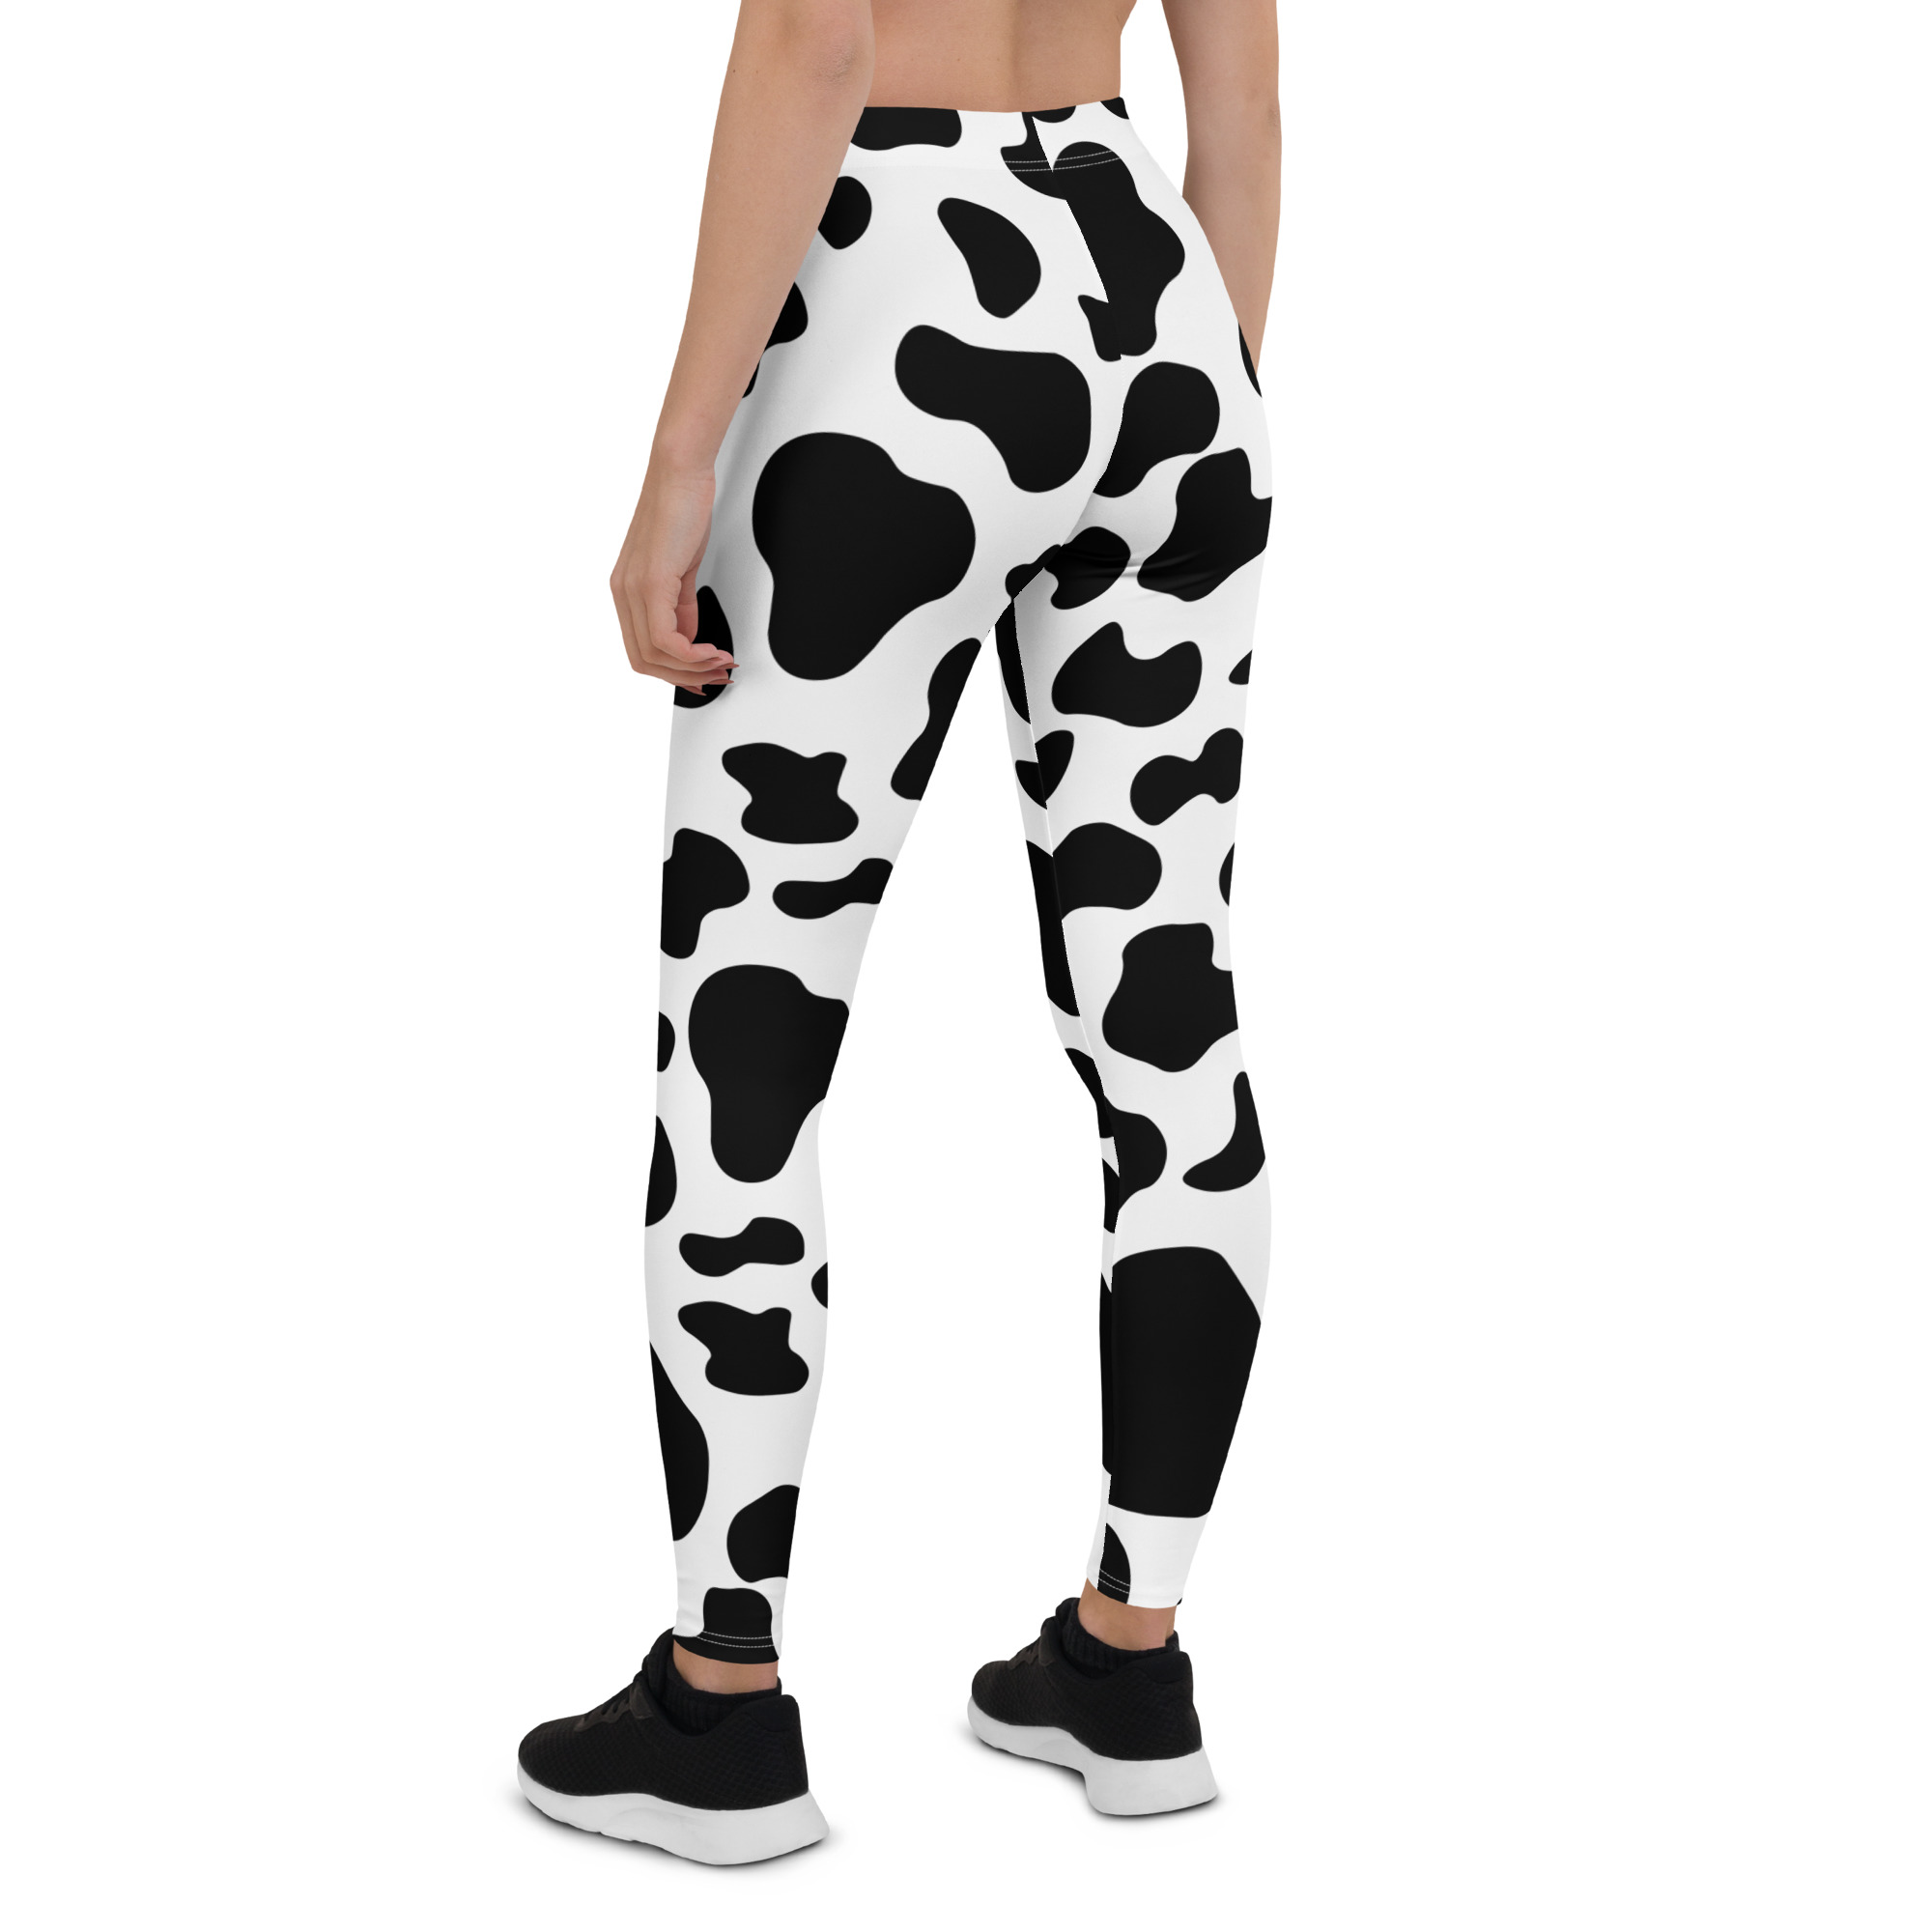 Plus Size Women's Cow Print Leggings Official Merch CL1211